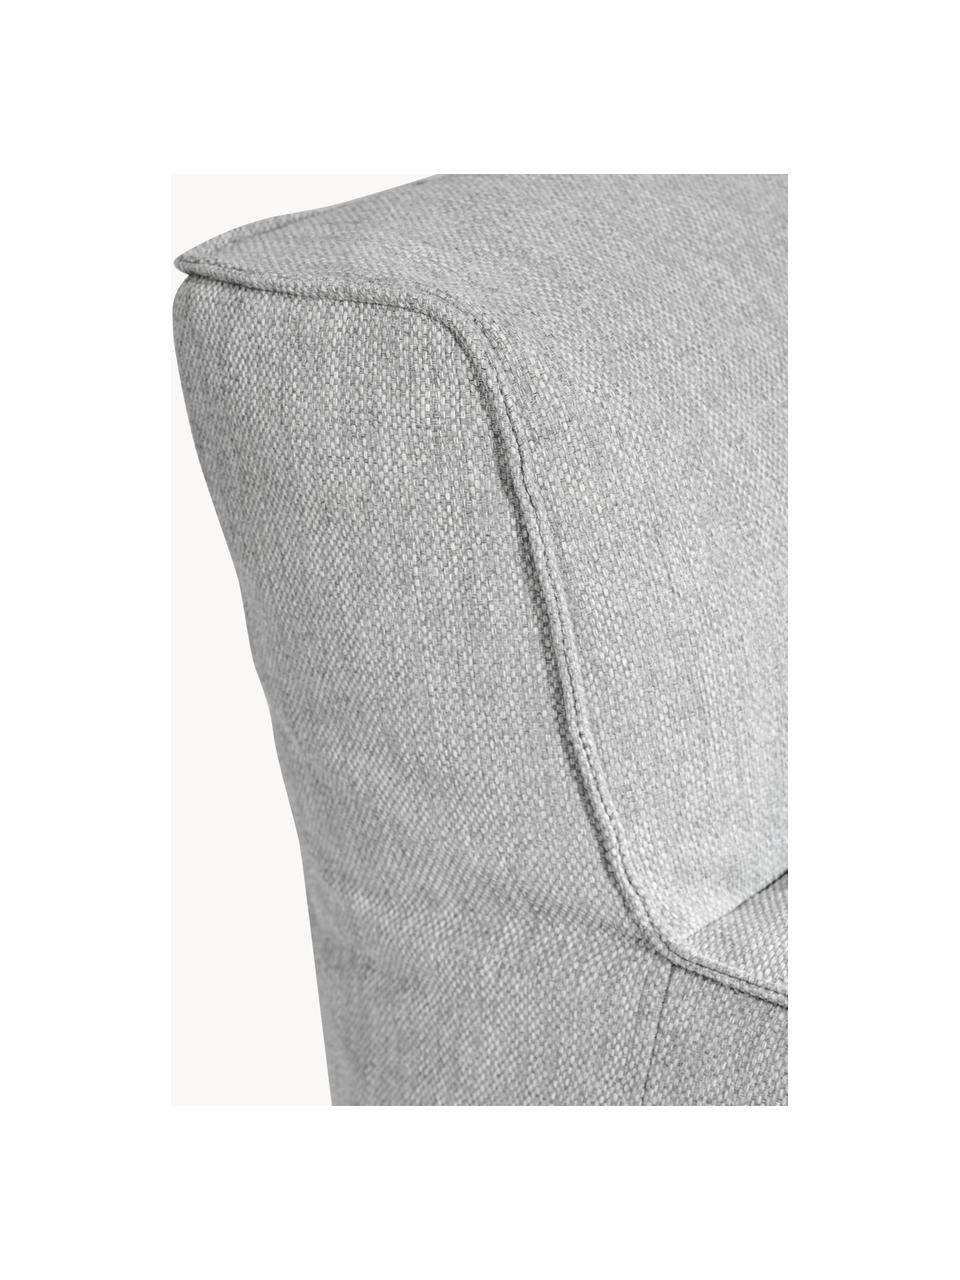 Canapé lounge d'extérieur Grow (2 places), Tissu gris clair, larg. 130 x prof. 95 cm